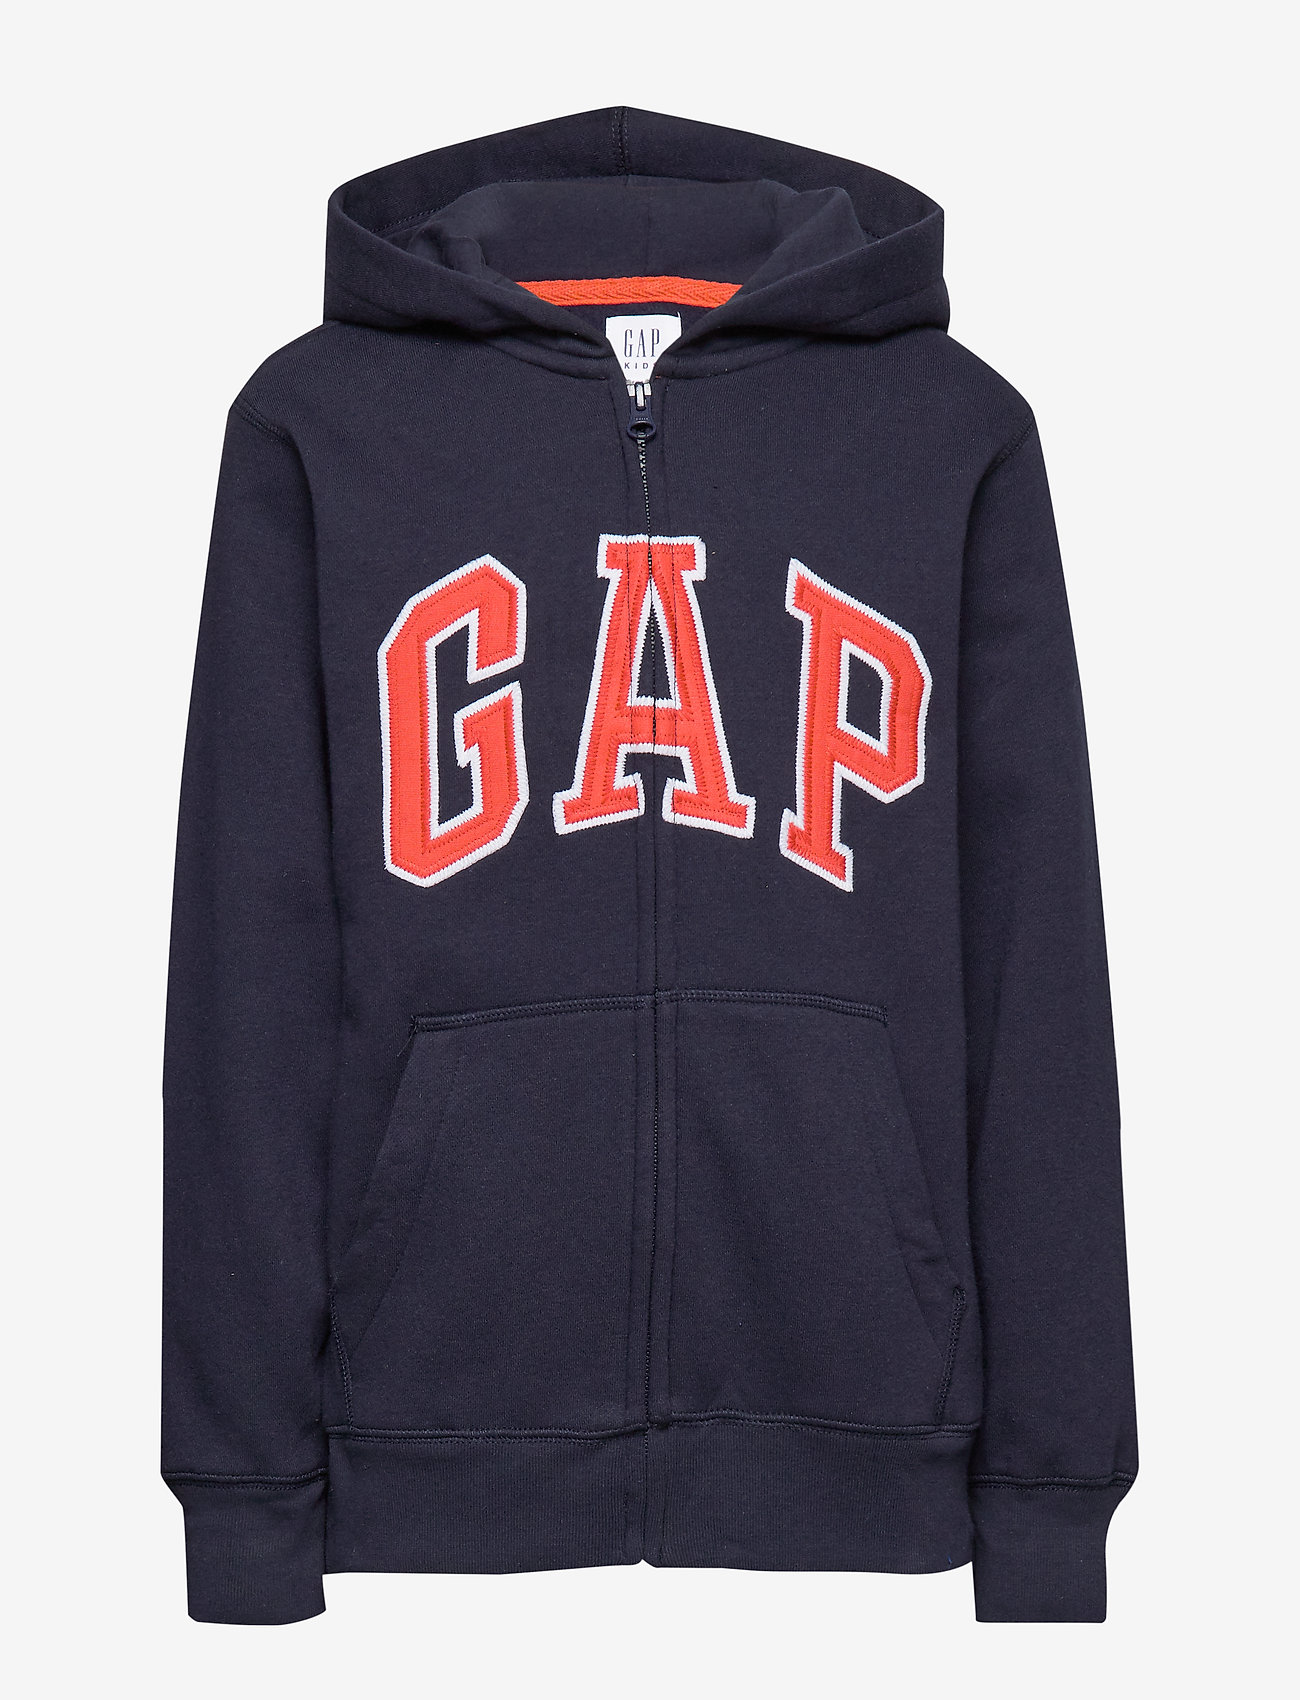 gap light blue hoodie